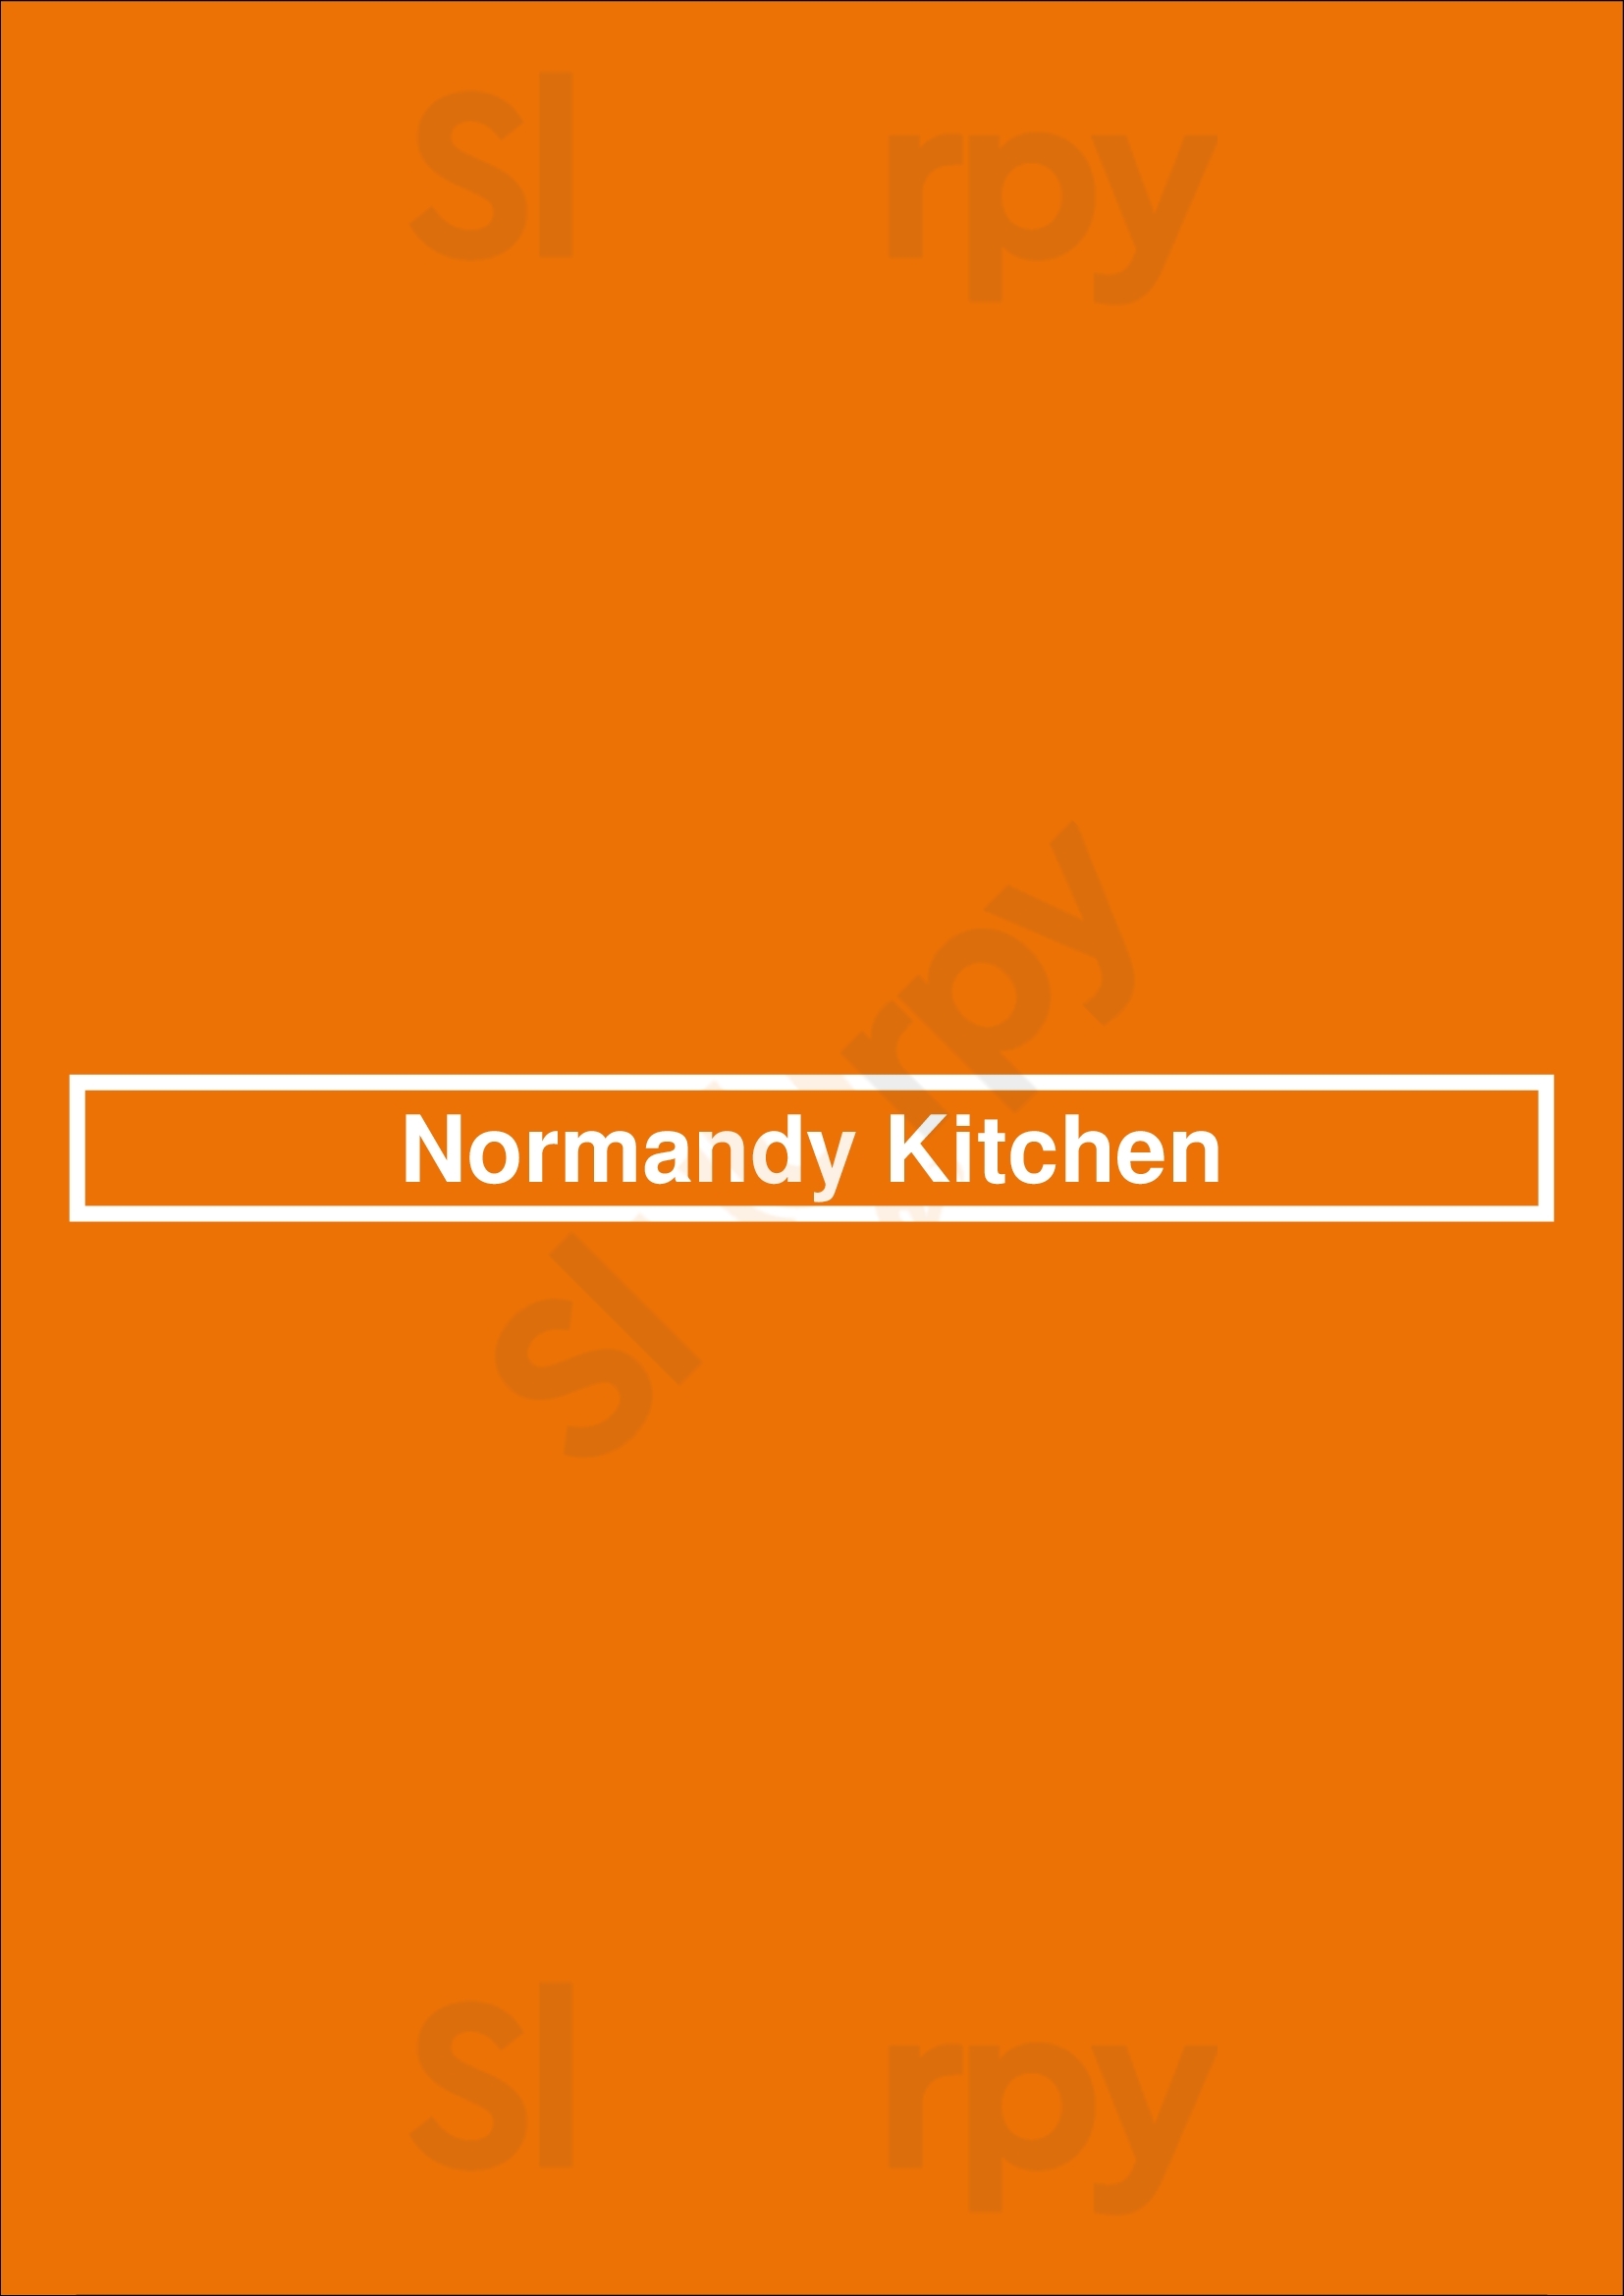 Normandy Kitchen Minneapolis Menu - 1